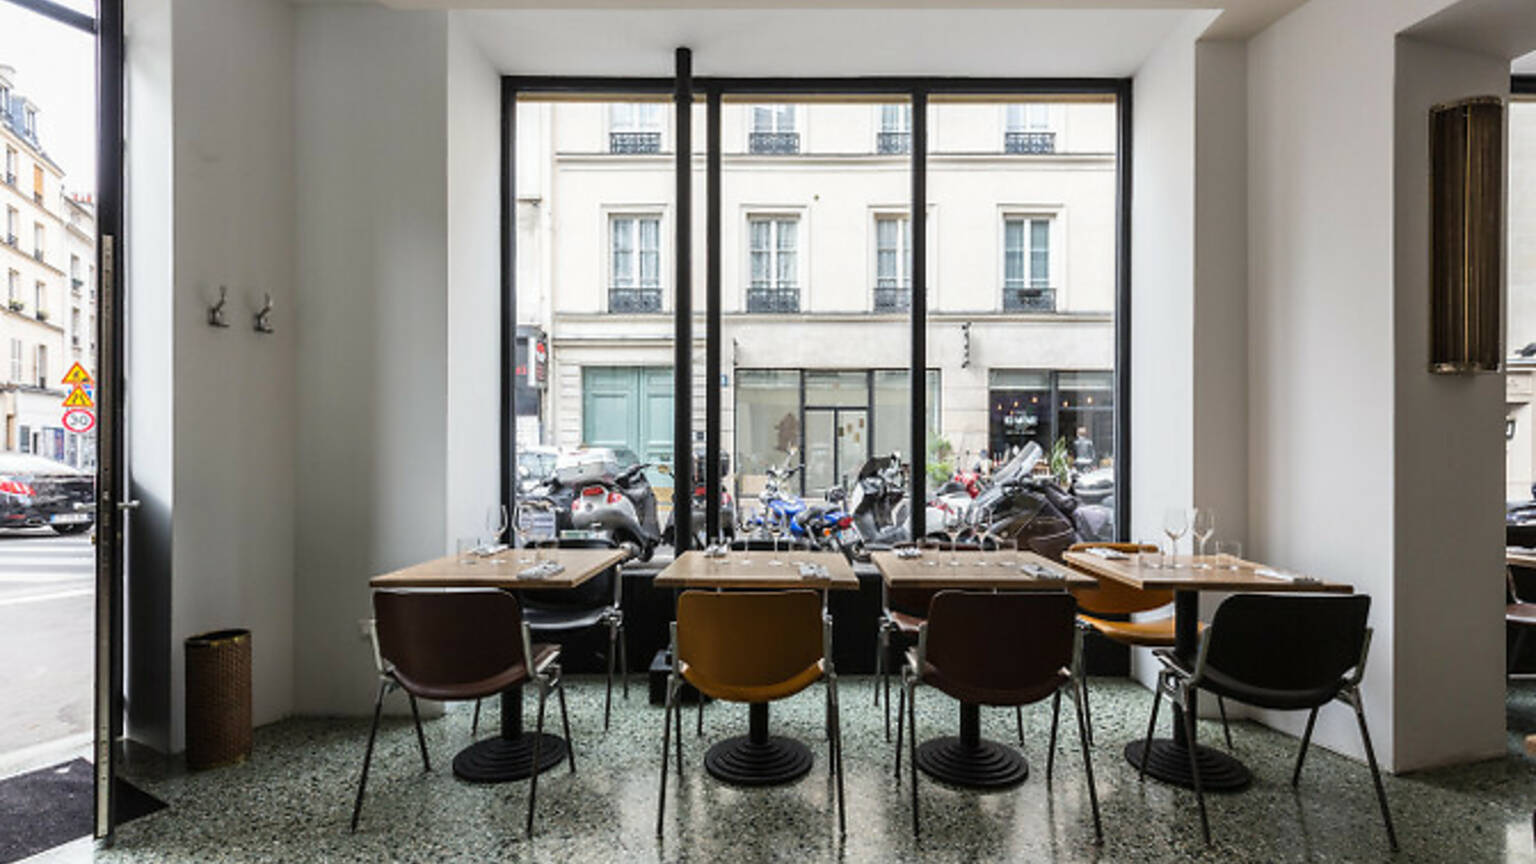 Restaurant Passerini | Restaurants in 12e arrondissement, Paris